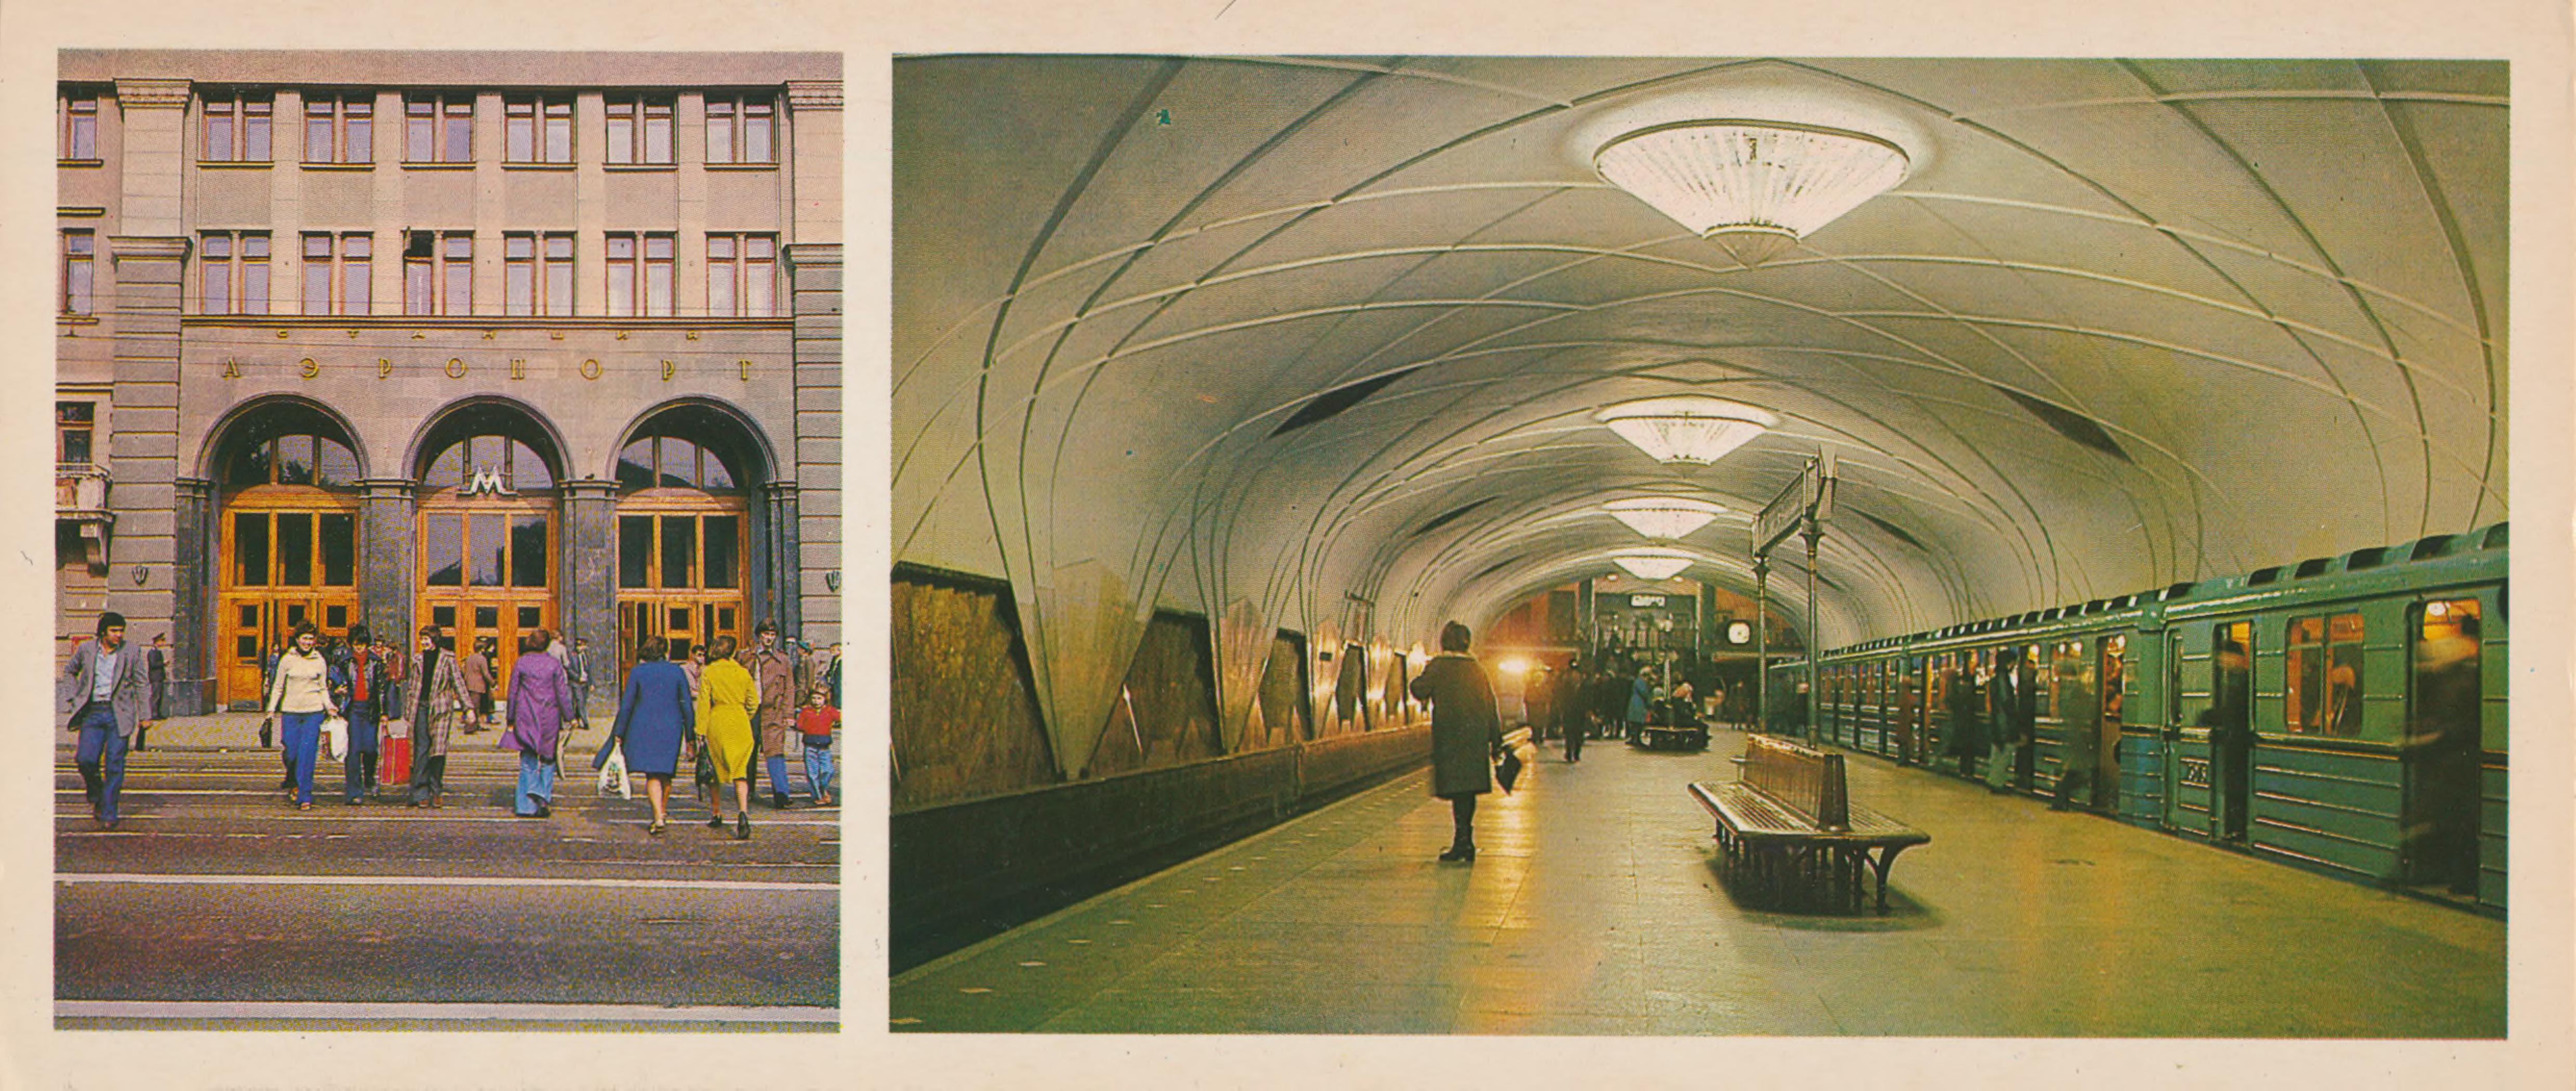 метро сокол 1980